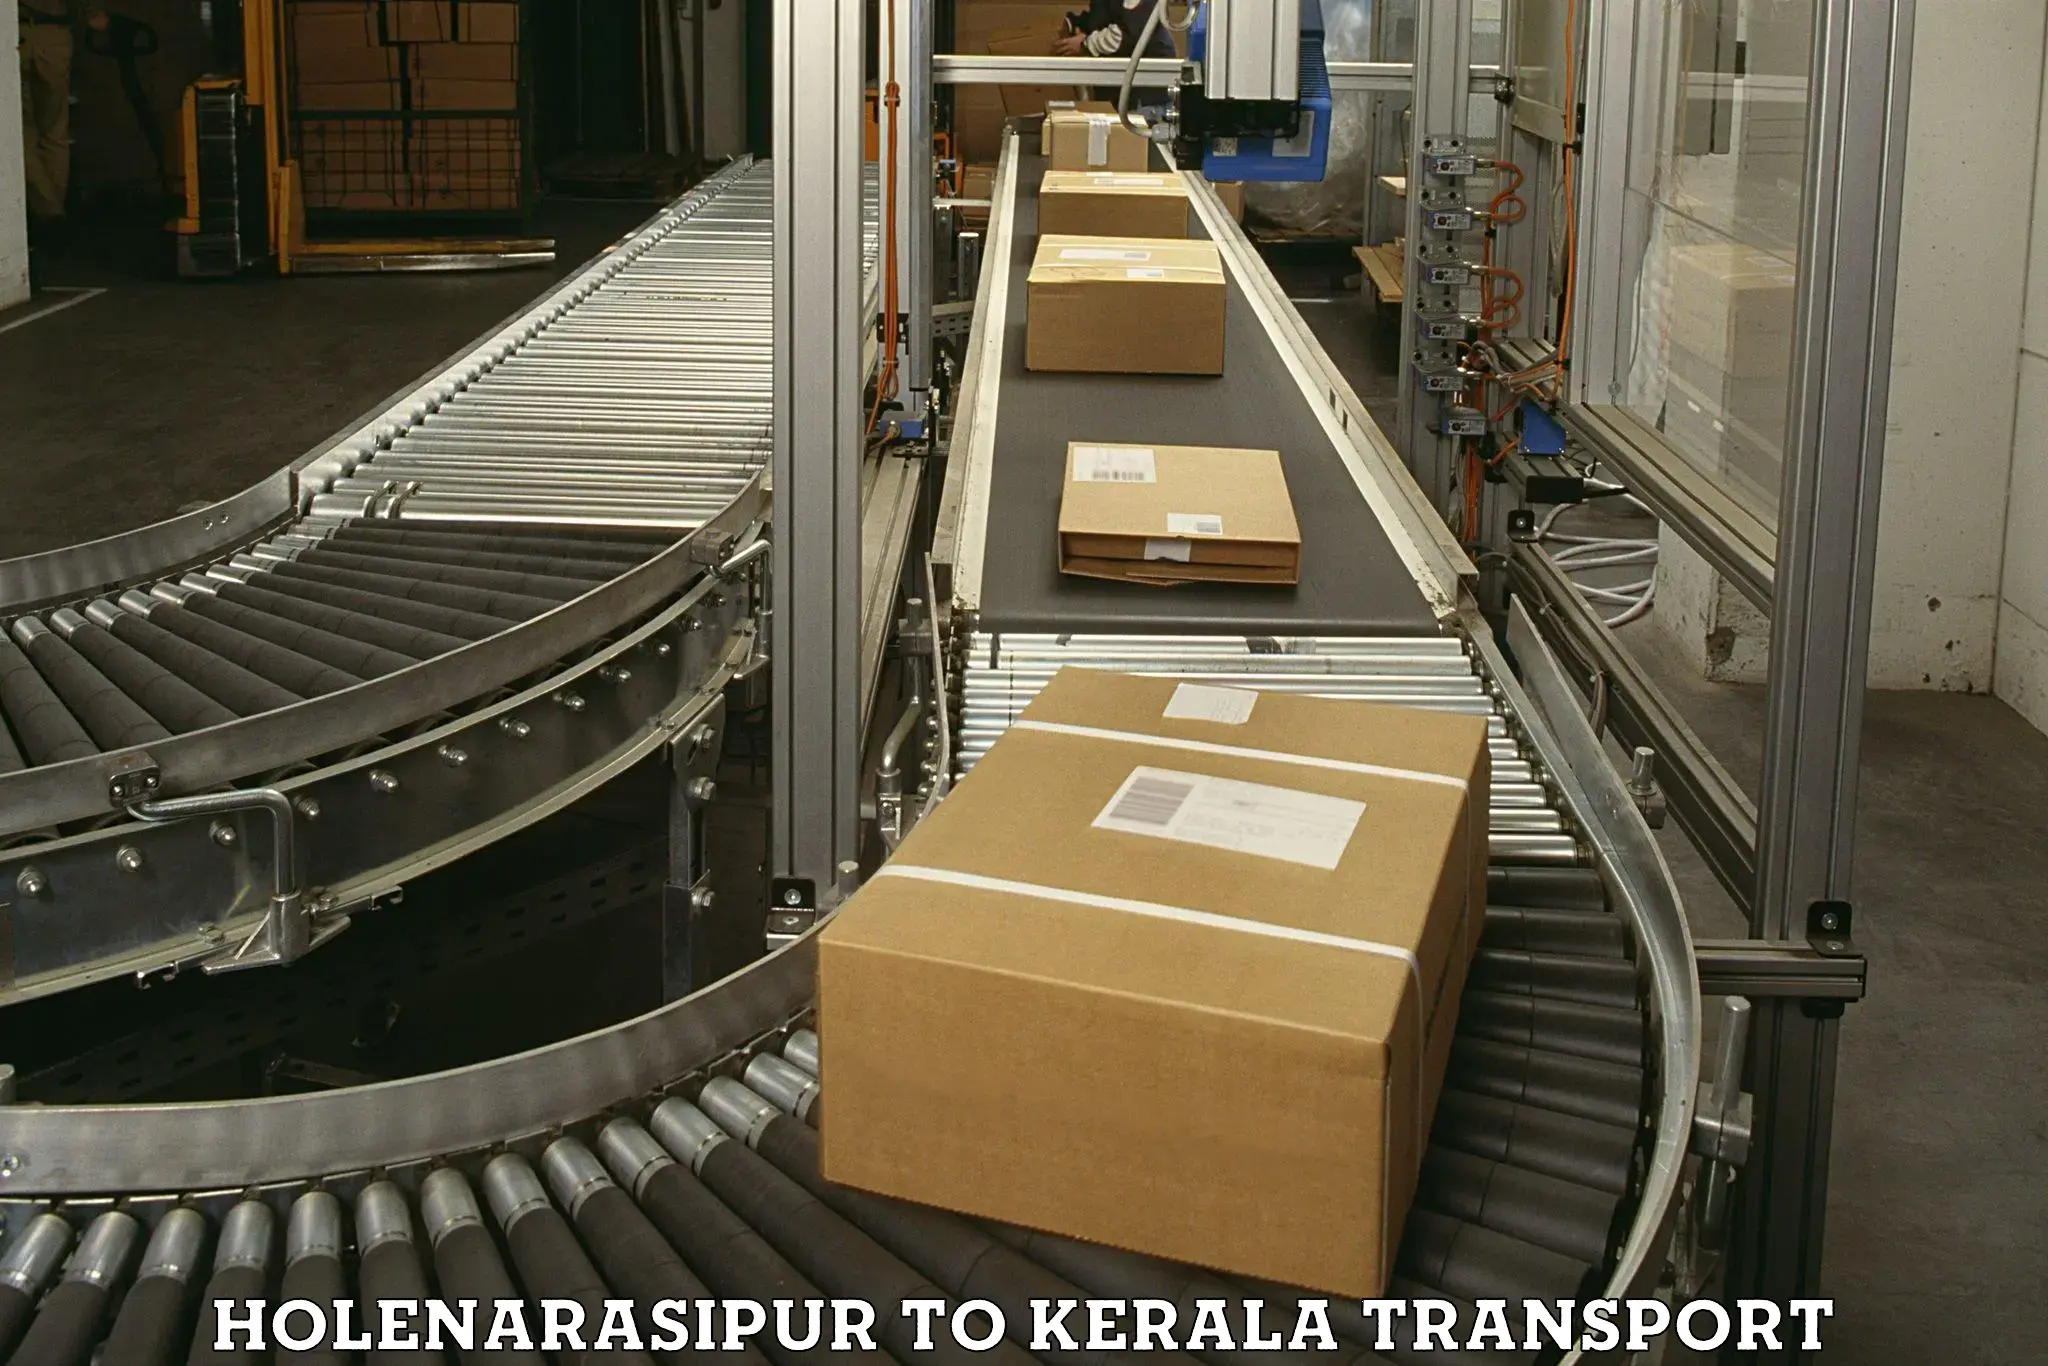 Nearby transport service Holenarasipur to Kerala